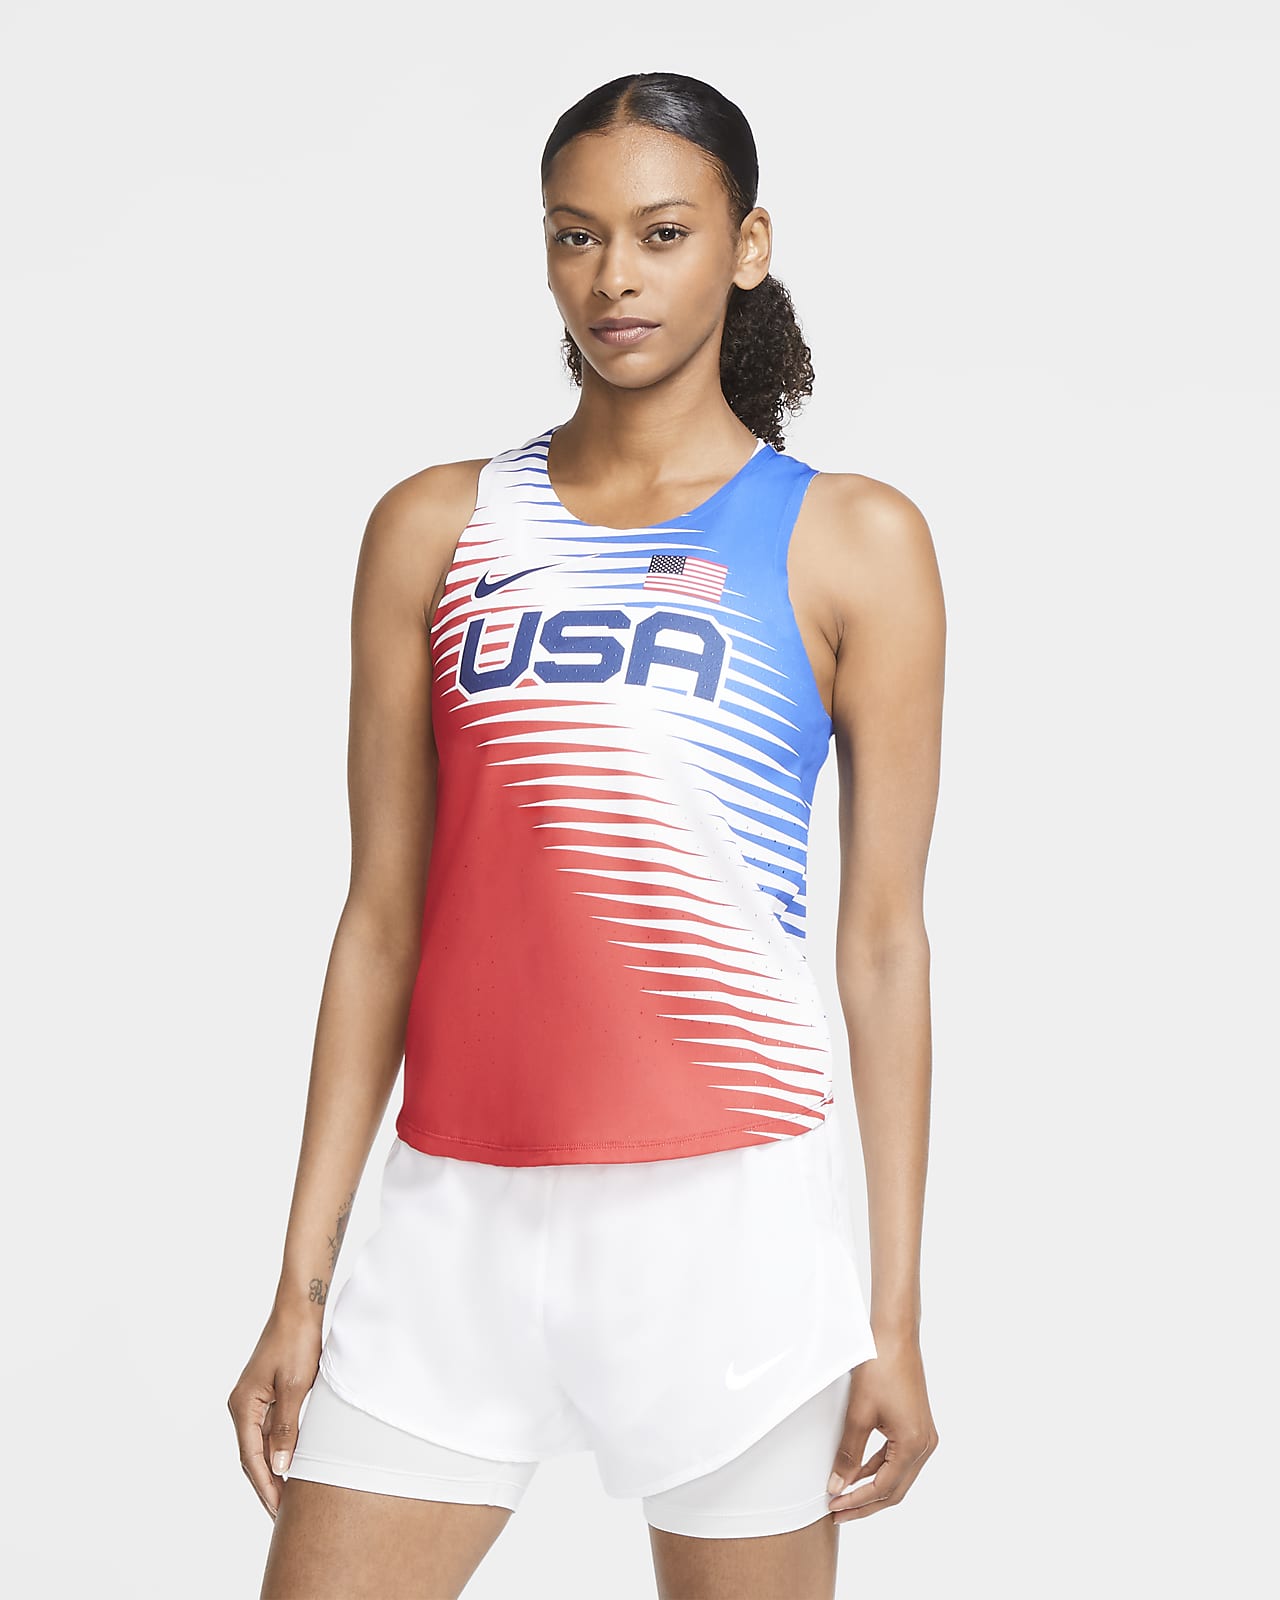 hårdtarbejdende følsomhed Anvendelig Nike Dri-FIT ADV Team USA AeroSwift Women's Running Singlet. Nike.com